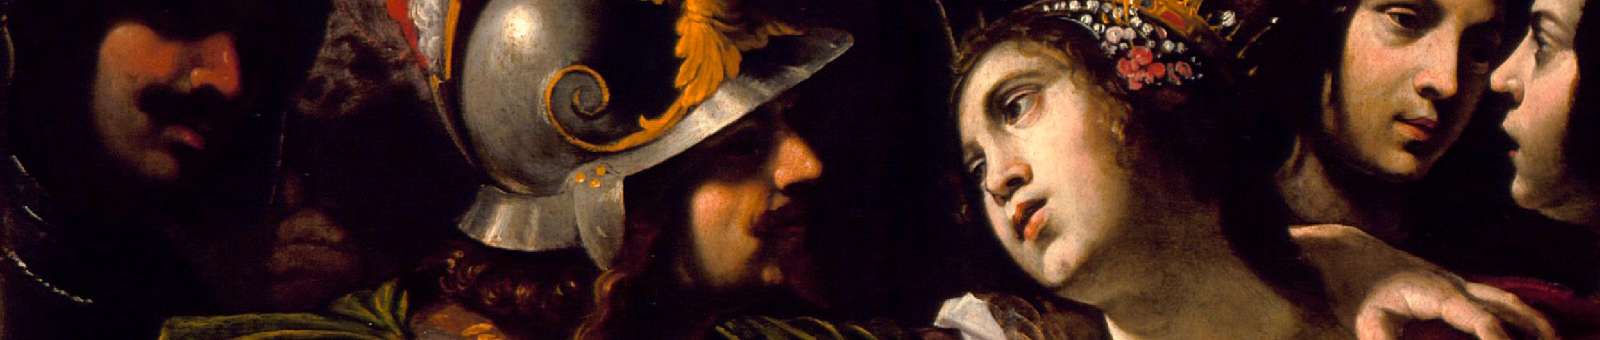 Bérénice, par la compagnie Oghma. Détail de : Didon et Enée se séparant, par Rutilio Manetti, vers 1630, Los Angeles County Museum.